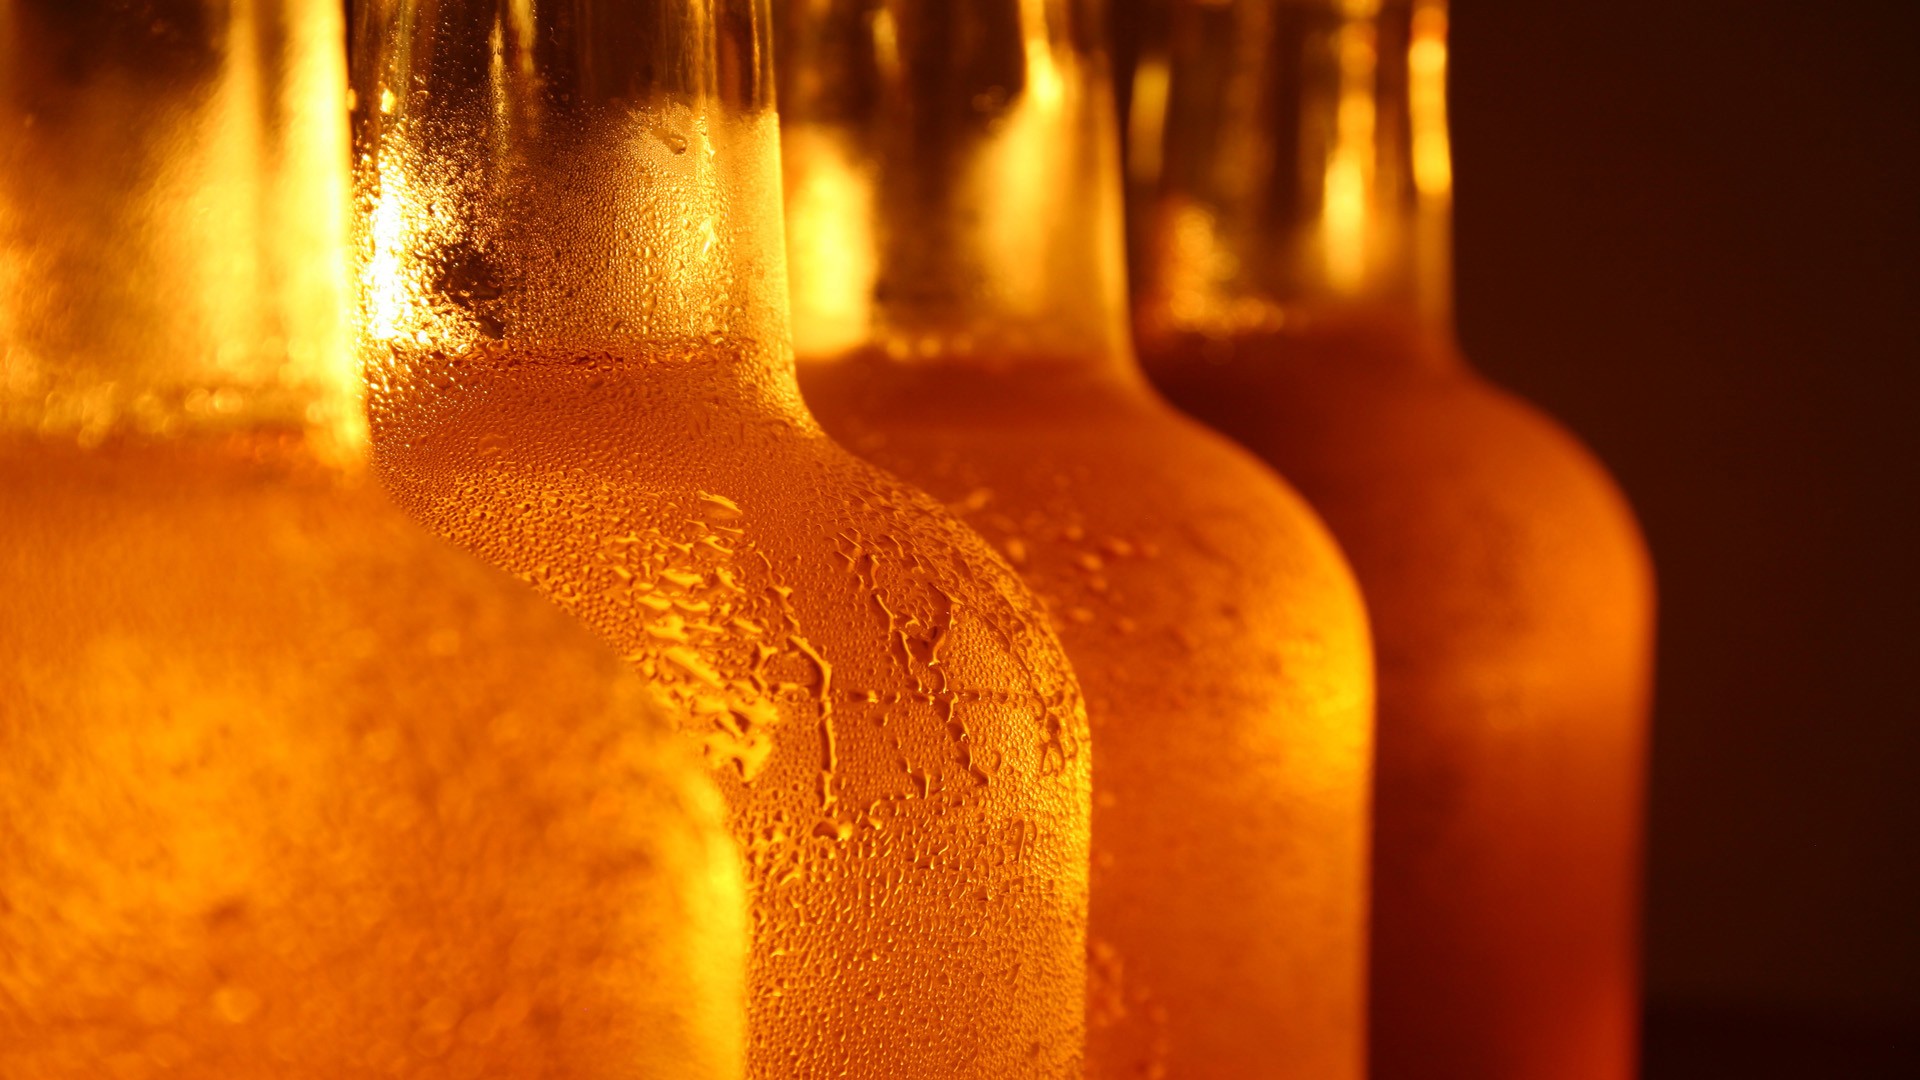 fond d'écran de bouteille de bière,bouteille,bouteille en verre,jaune,boisson,ambre